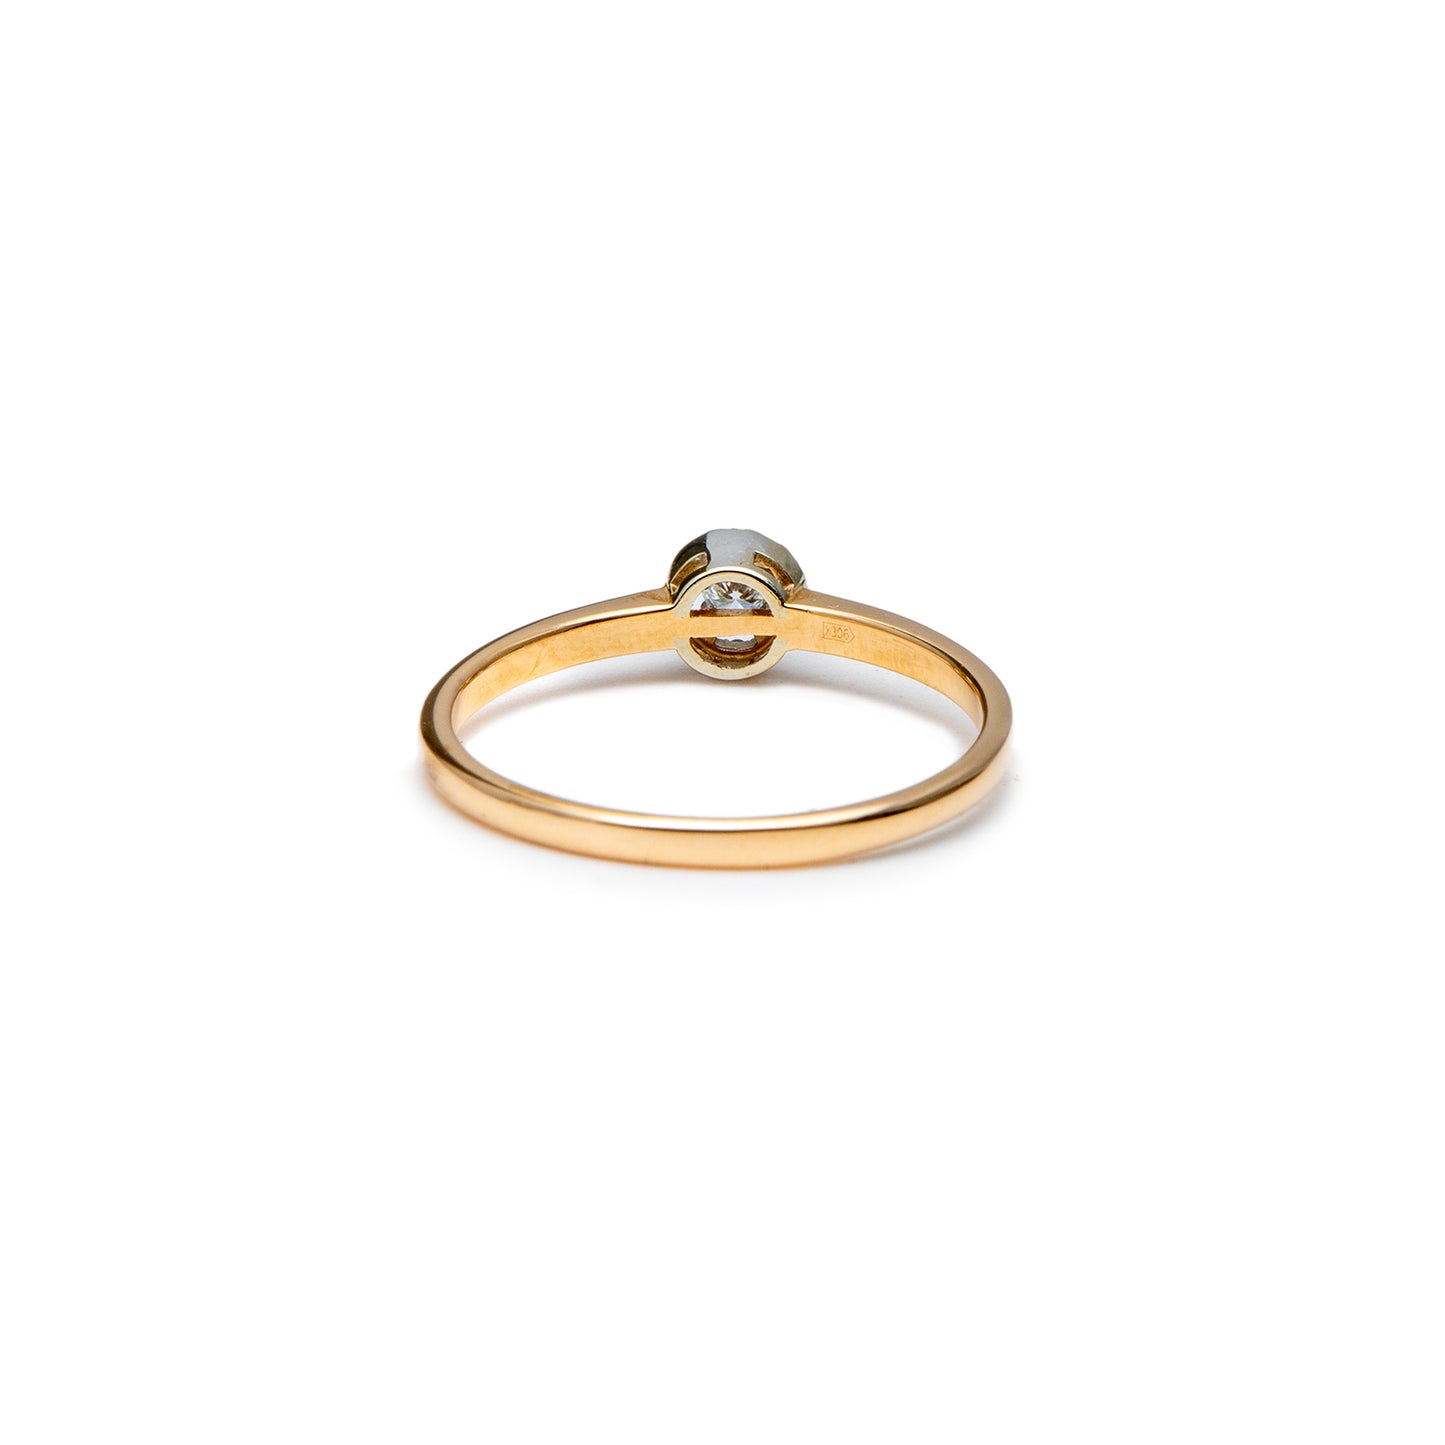 Engagement ring diamond rose gold 14K women's jewelry gold ring engagement ring 